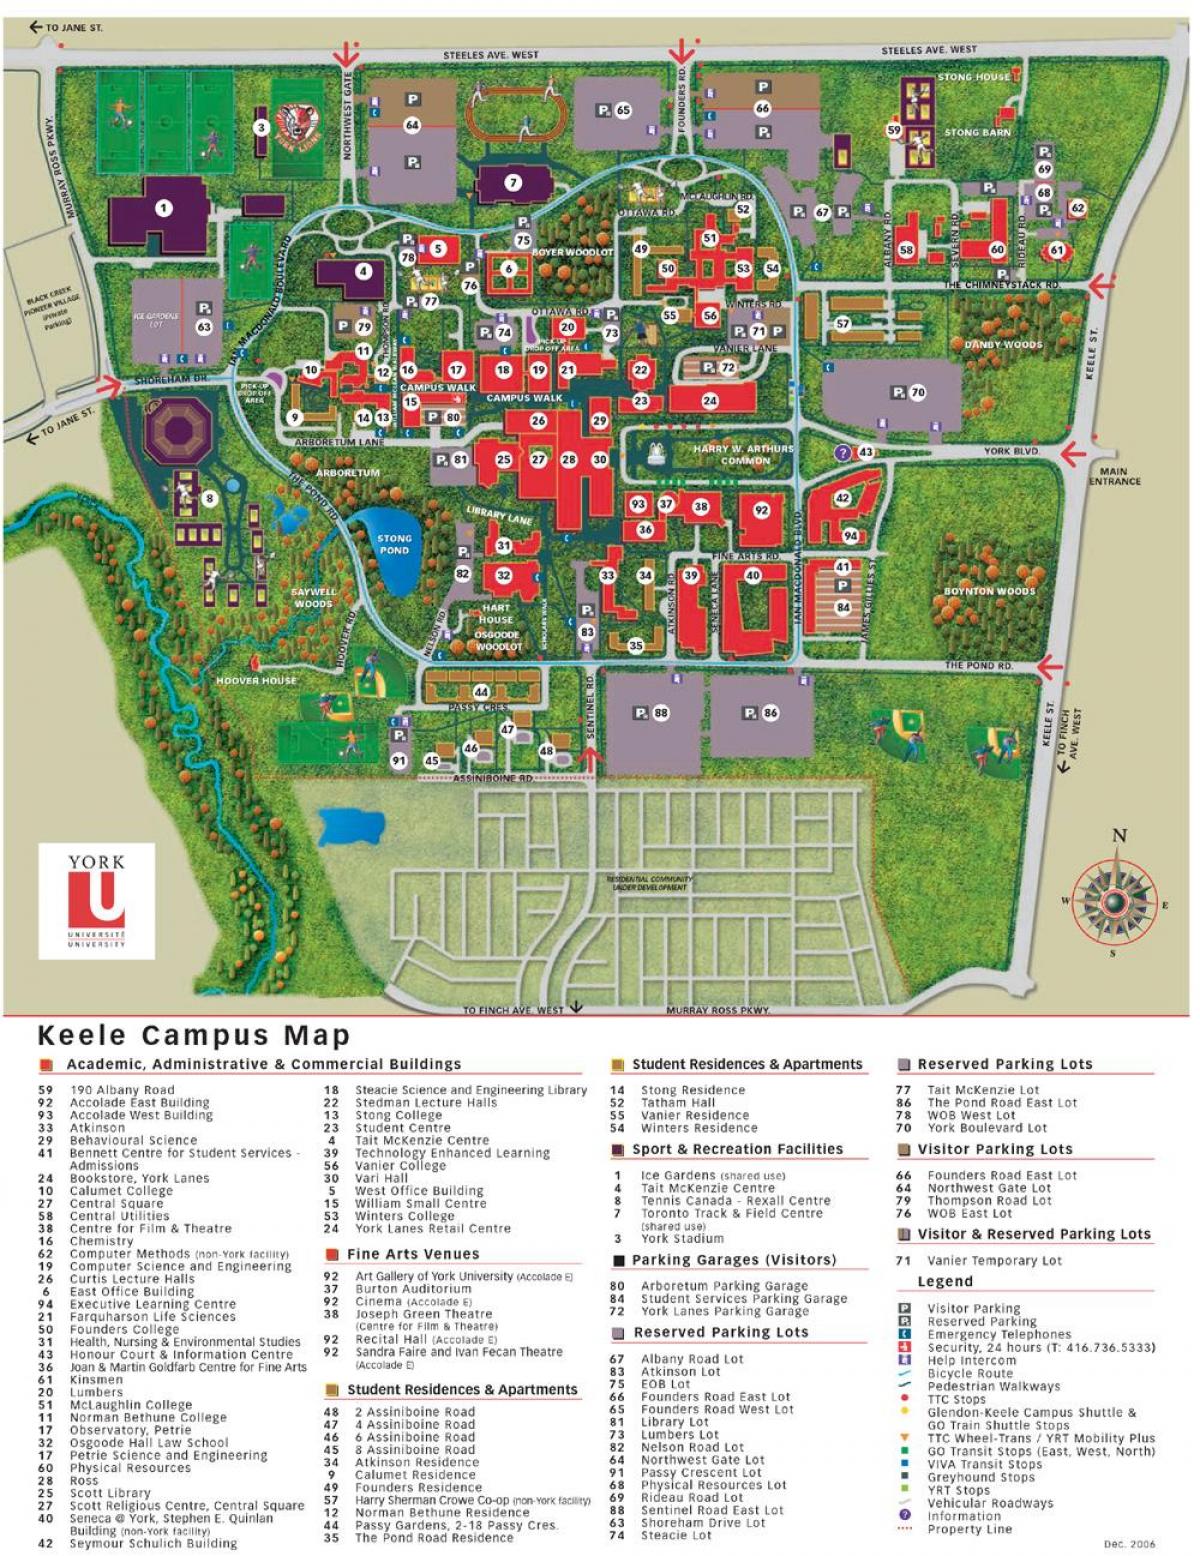 Mapa ng York university campus keele